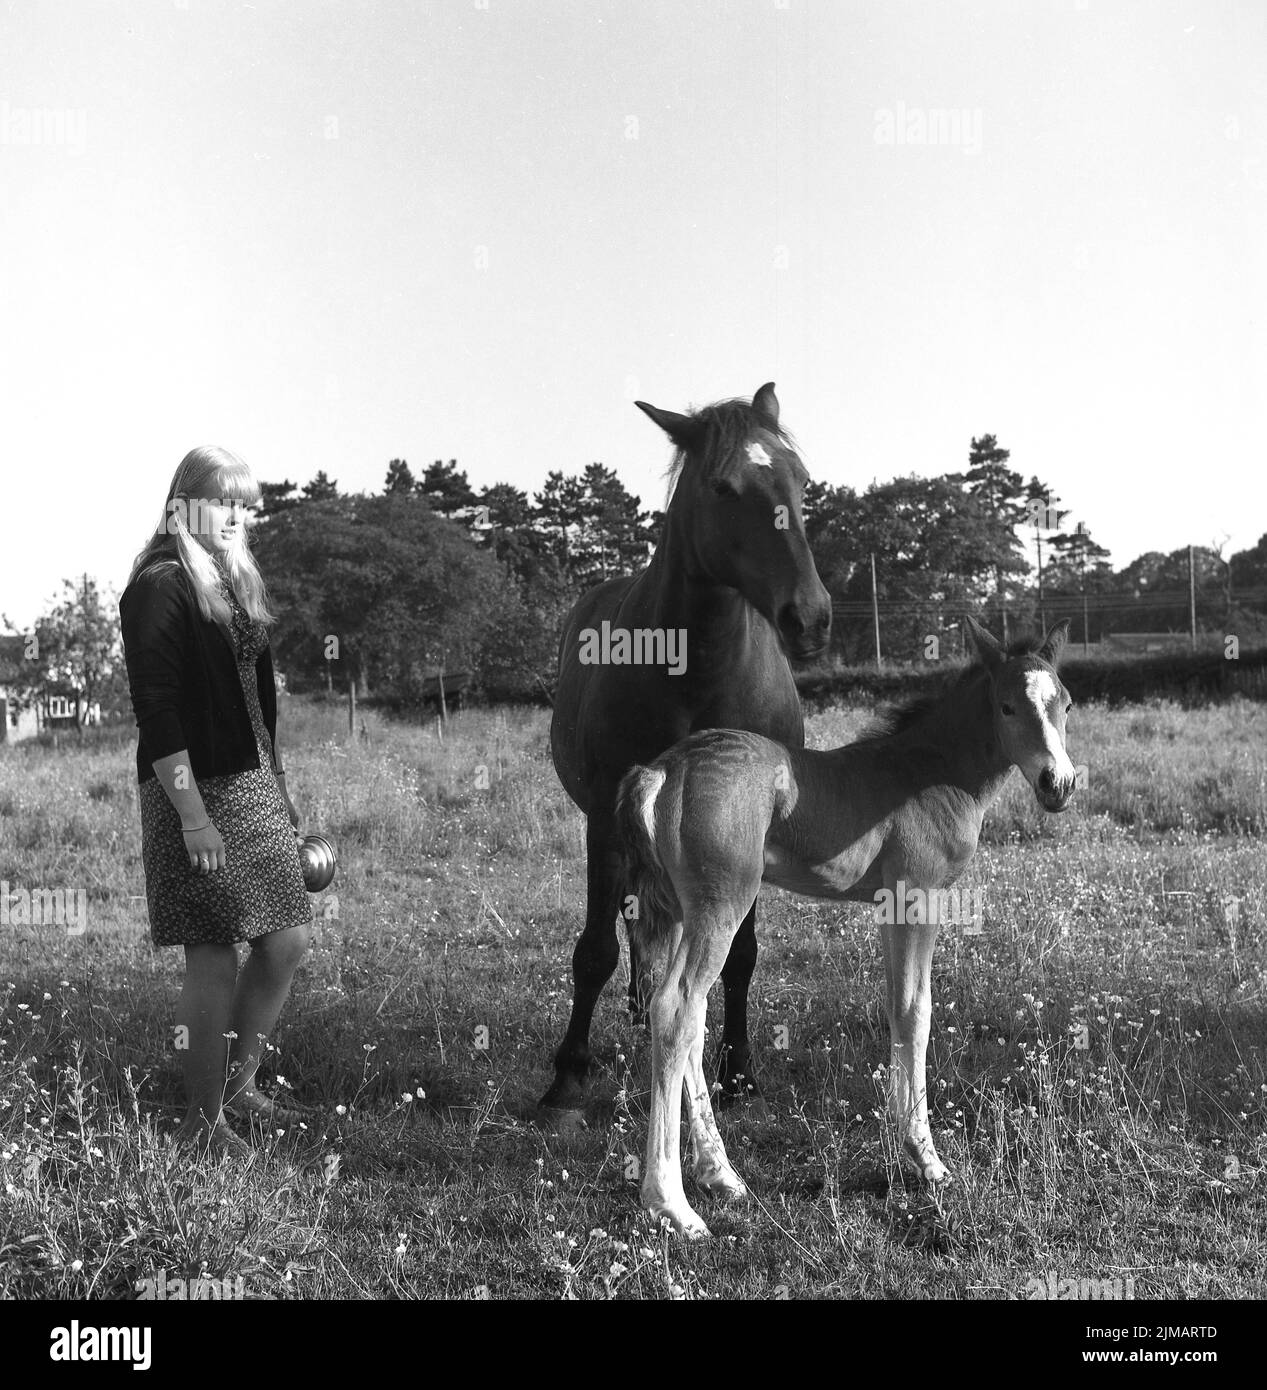 1969, historique, une jeune femme debout dans un champ par un cheval et son ennemi, Angleterre, Royaume-Uni. Banque D'Images